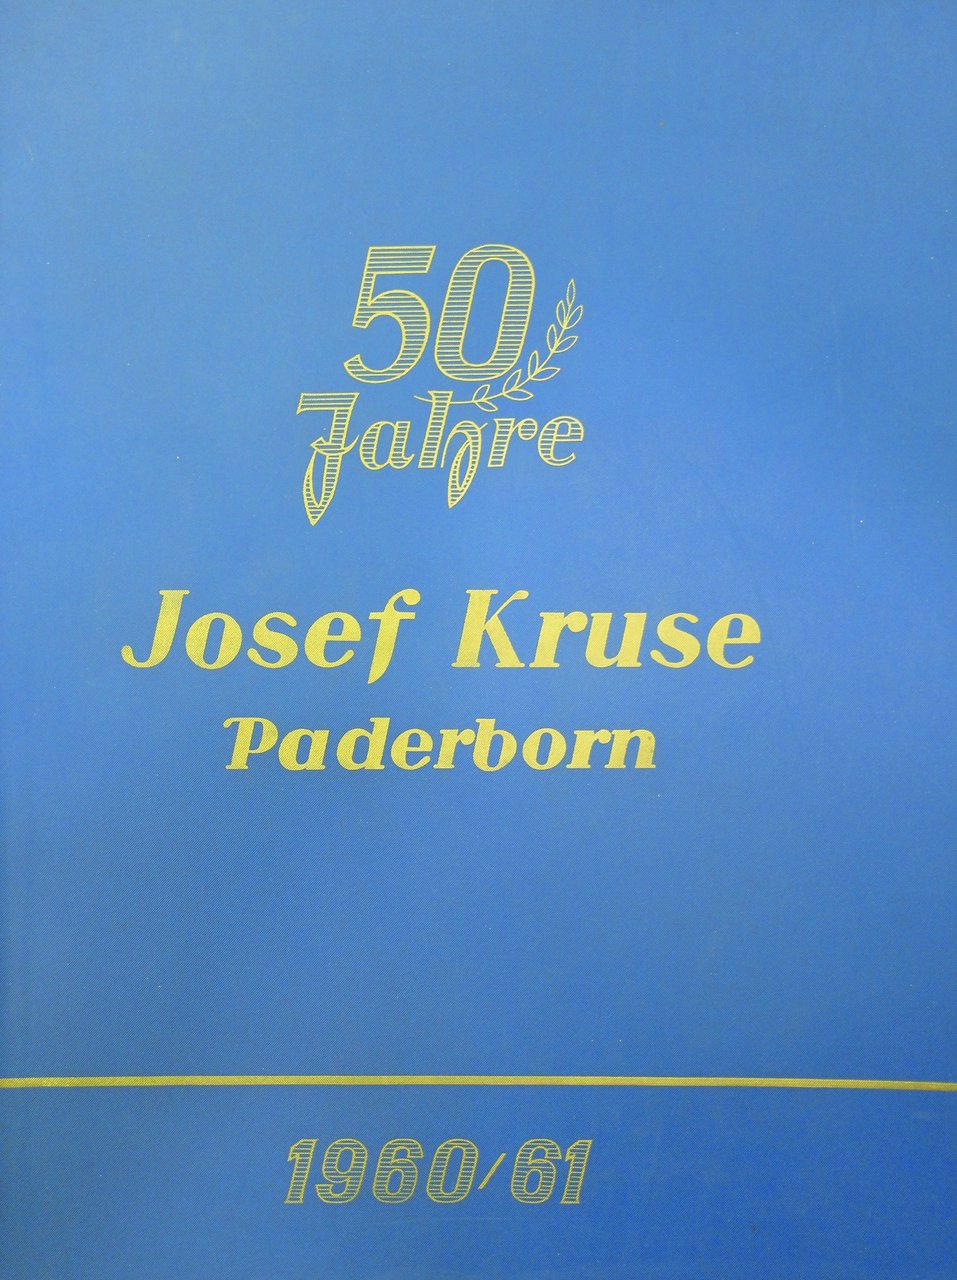 JOSEF KRUSE GROSSHANDLUNG" - PADERBORN - 50 JAHRE.